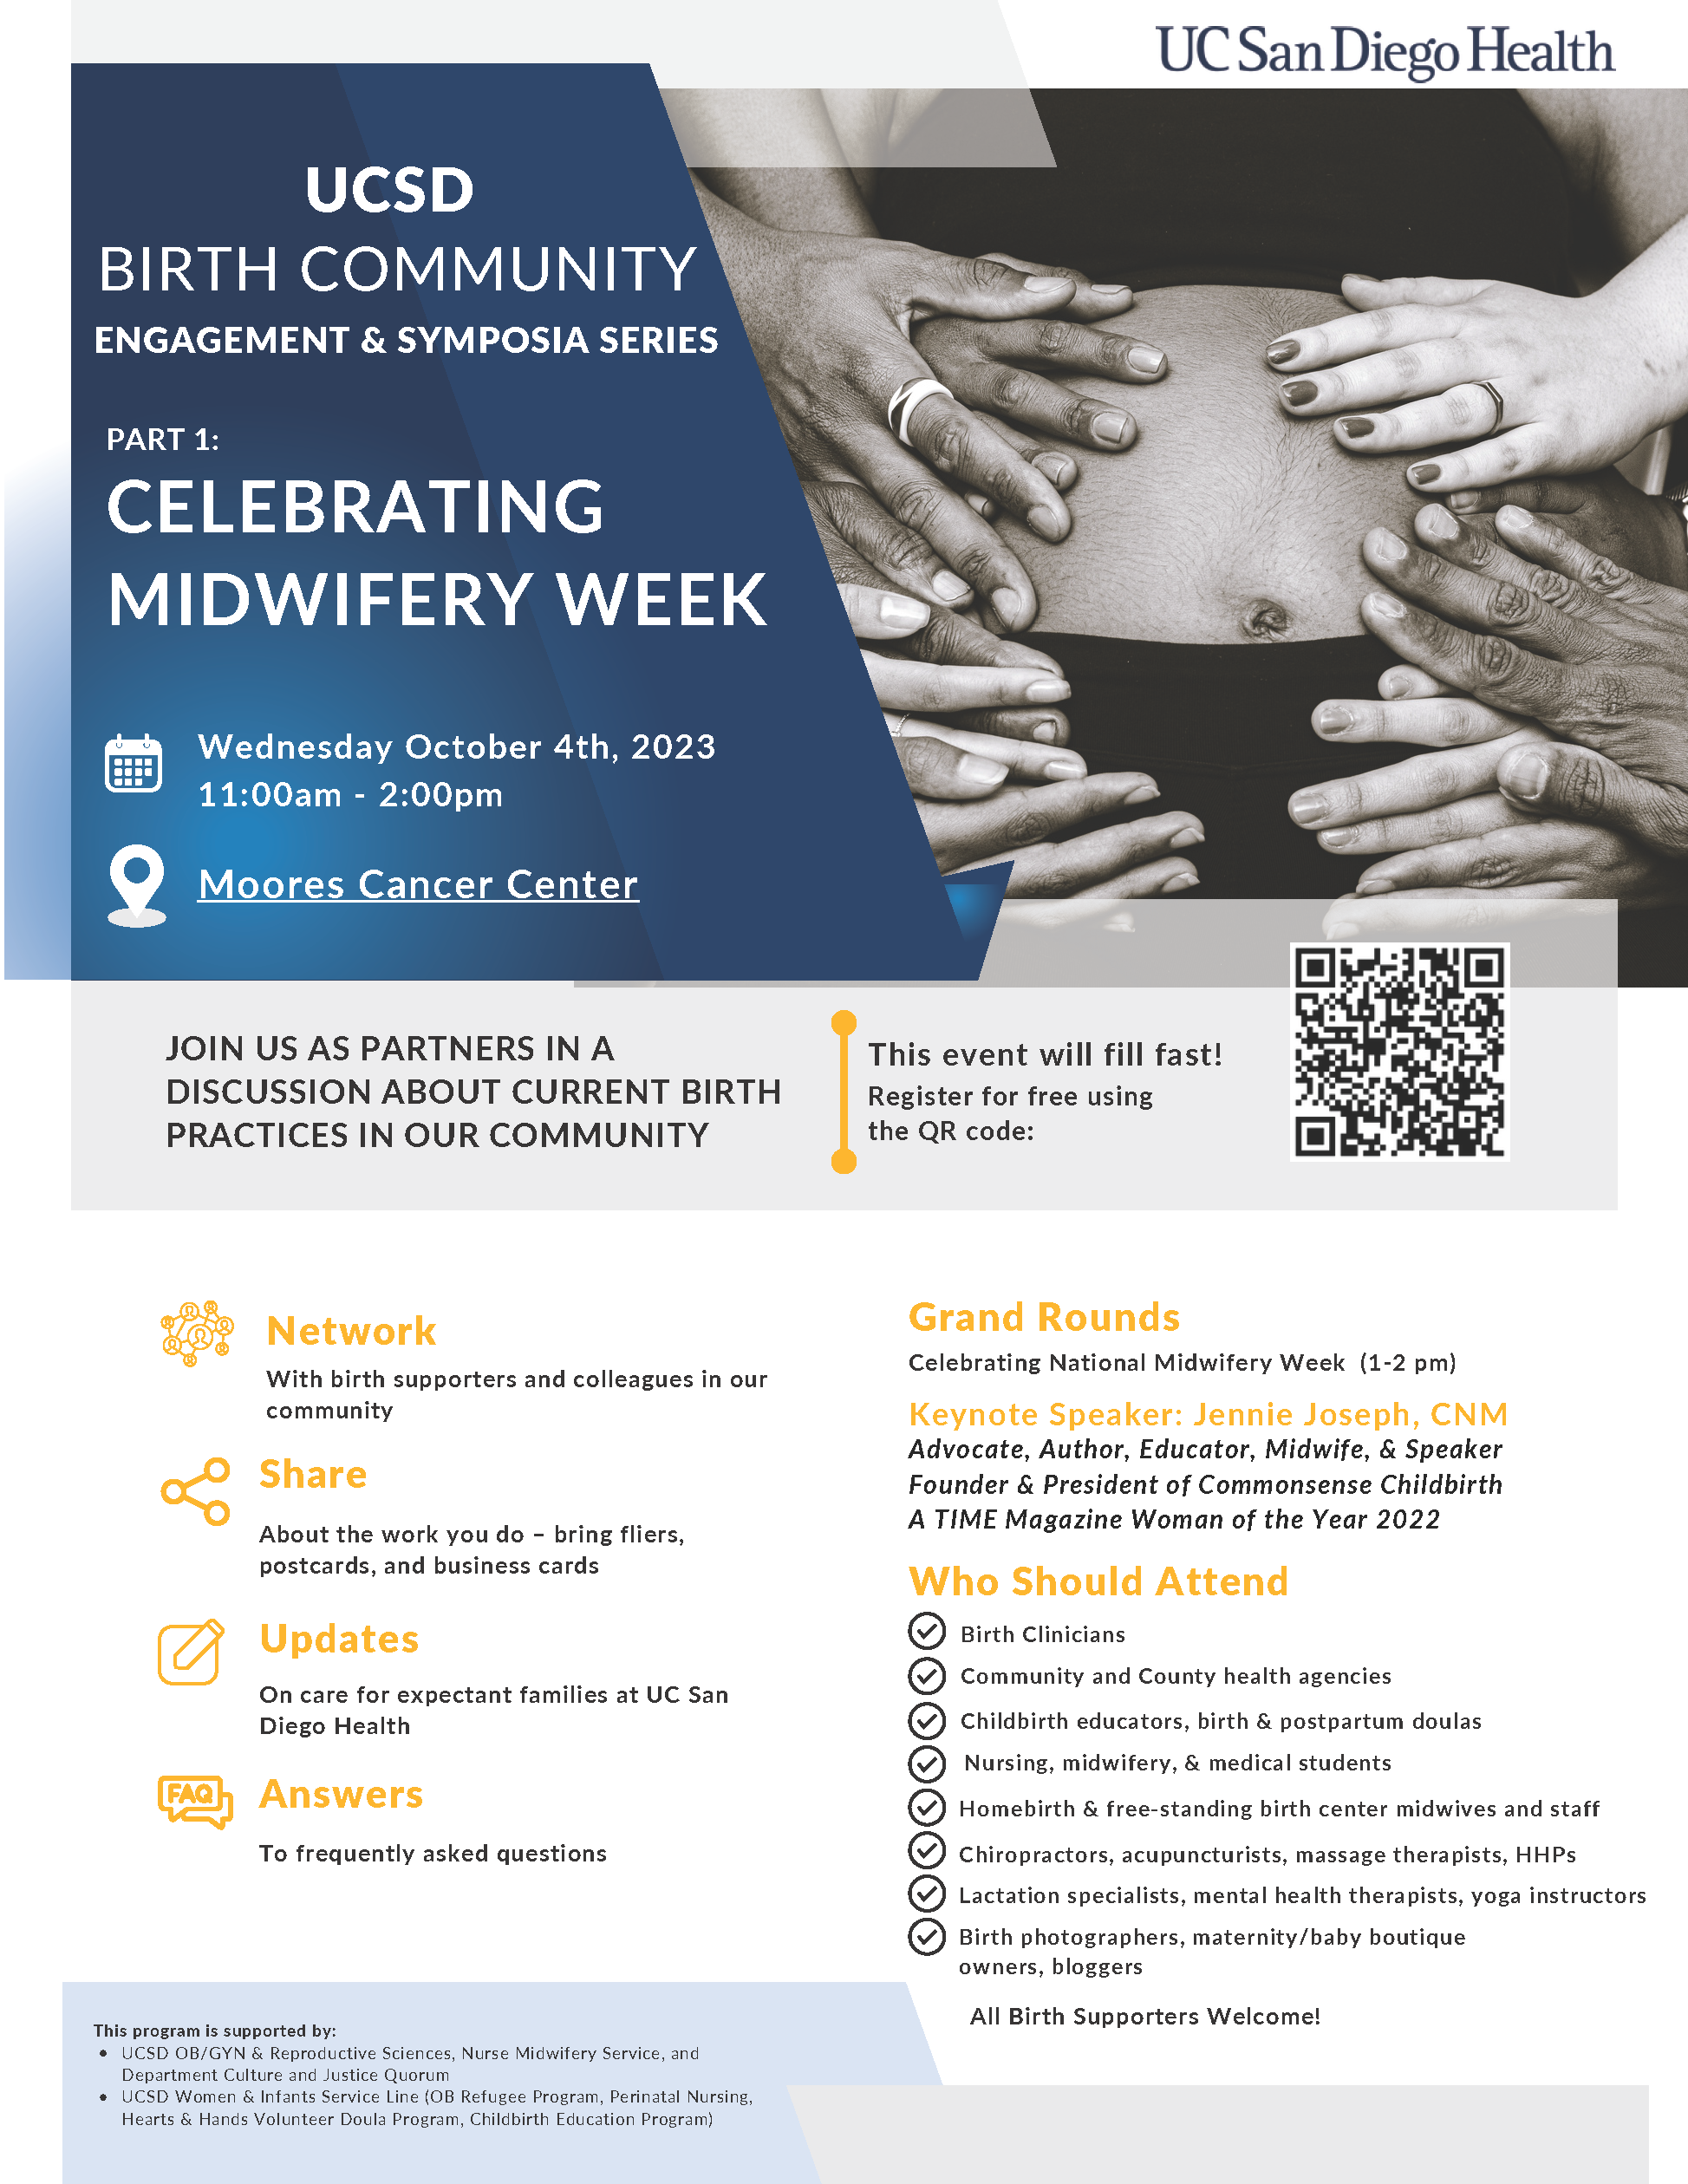 UCSD Midwifery Week